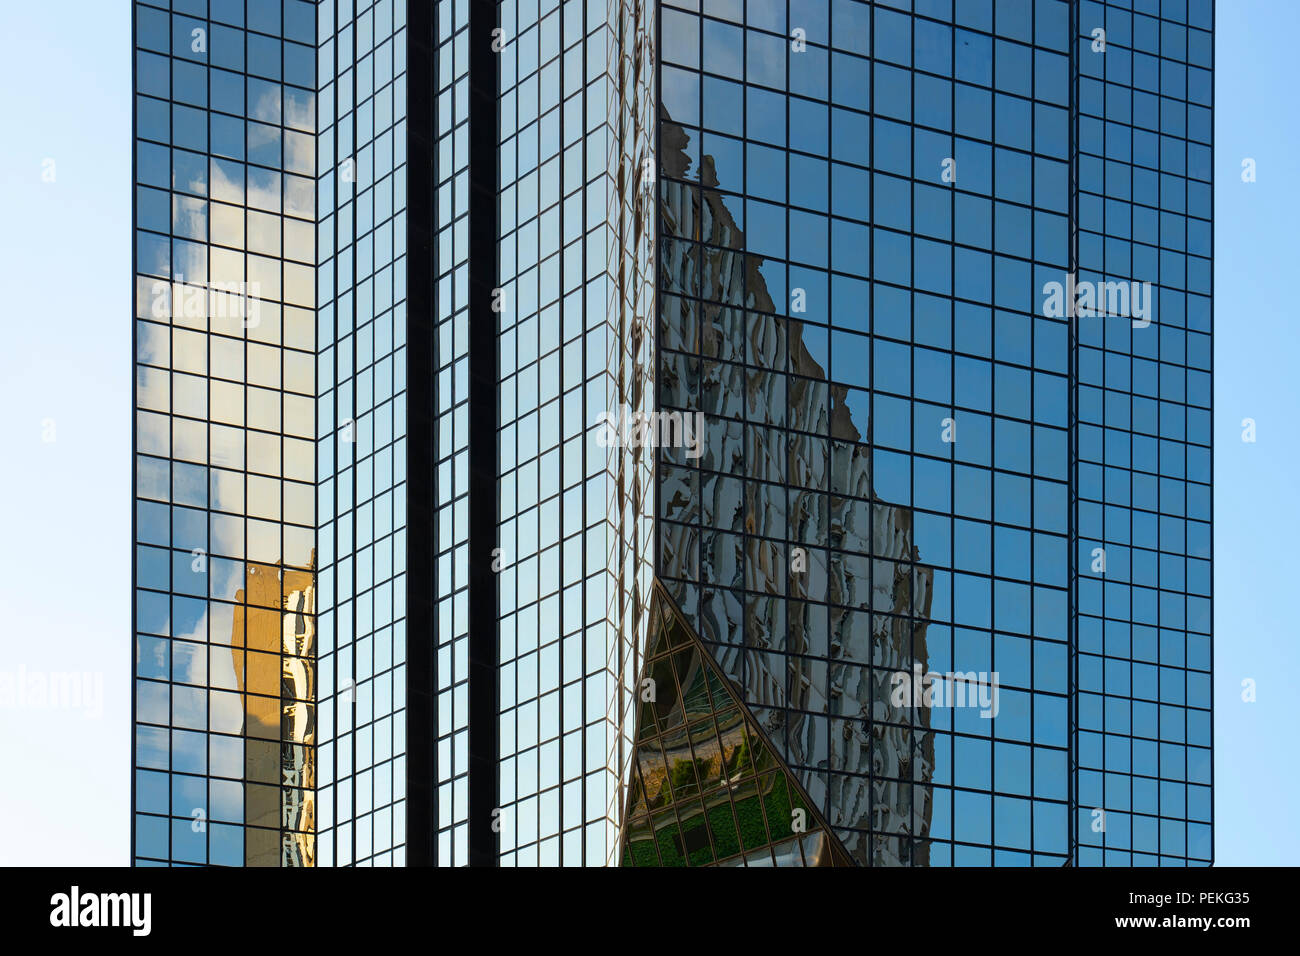 Les réflexions dans la façade en verre, Beaugrenelle, Paris montrant les bâtiments environnants et nuageux ciel bleu Banque D'Images